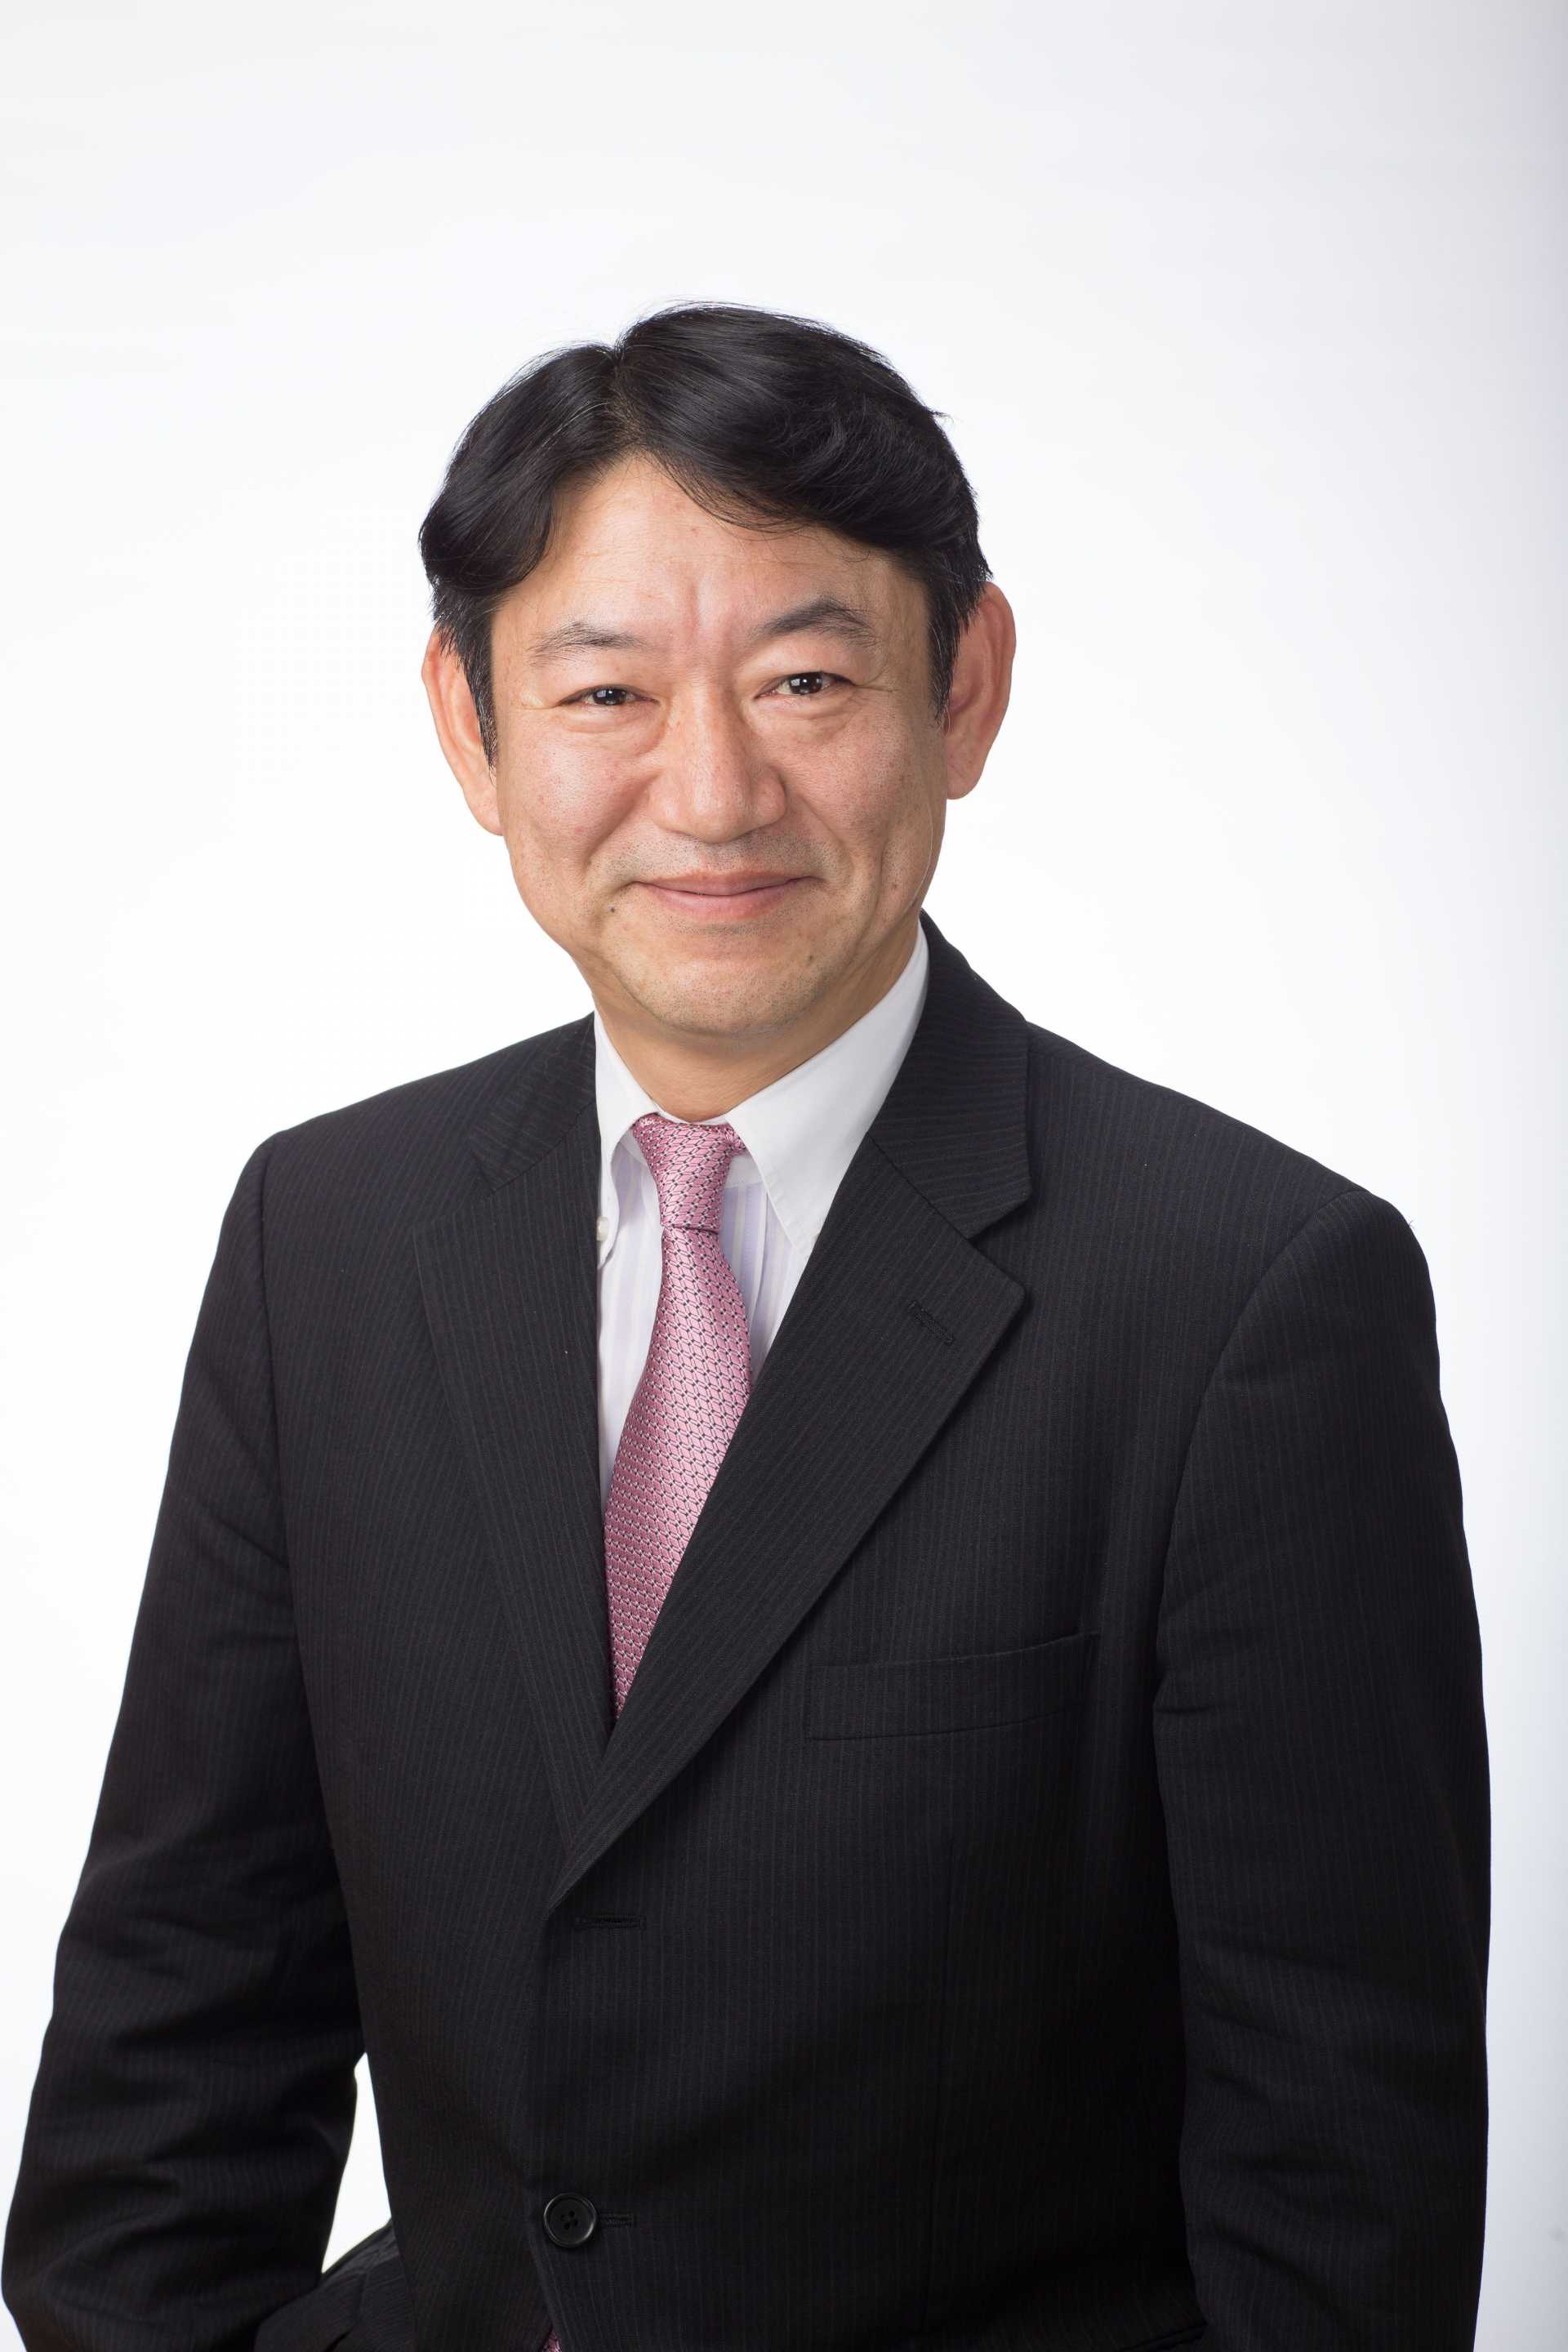 Mr. Itsu Adachi